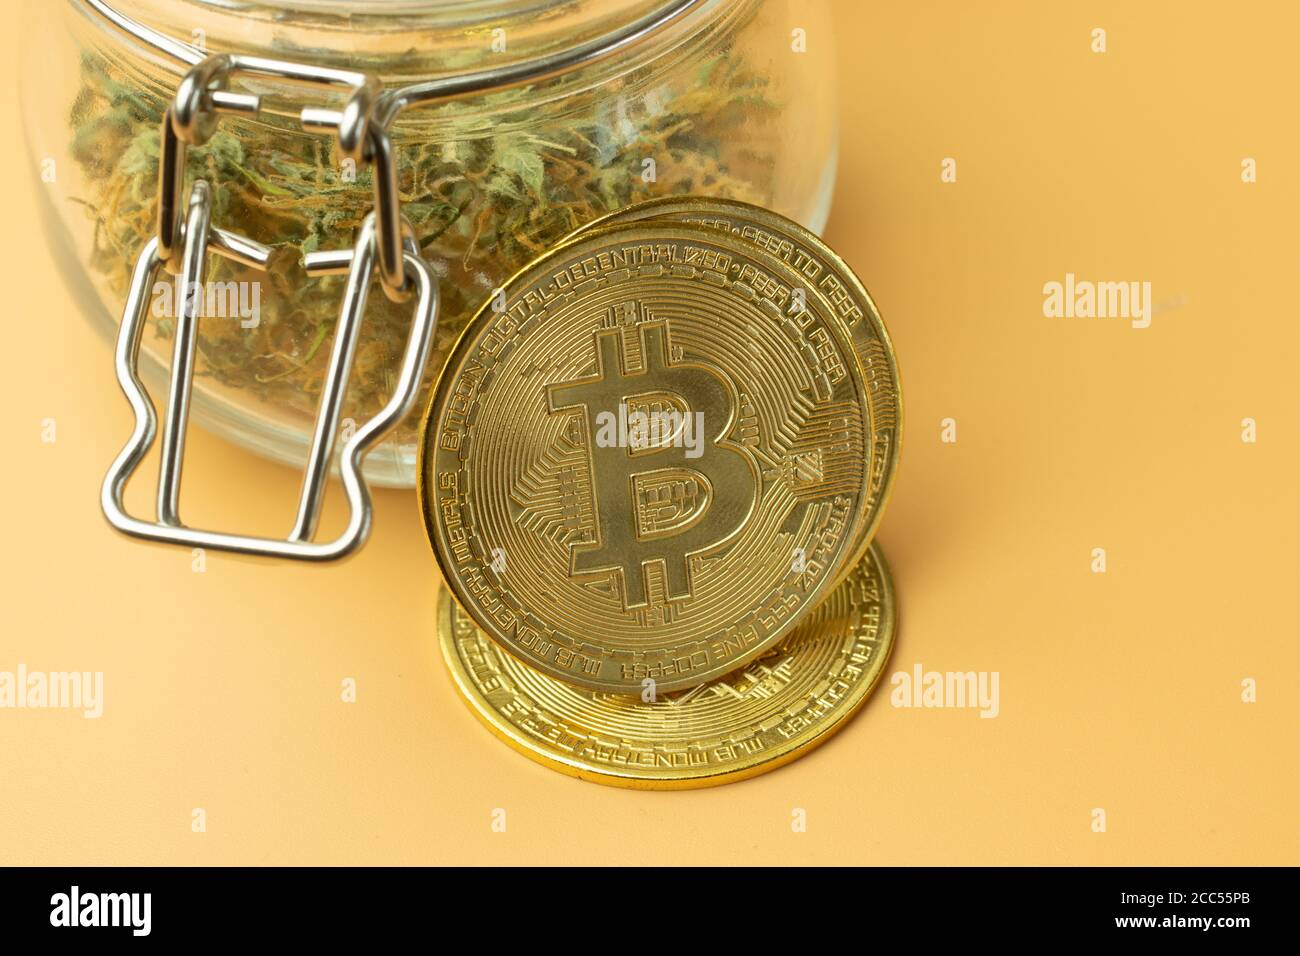 Bitcoin criptovaluta uso nell'acquisto di farmaci in forma anonima. Acquisto di marijuana per moneta btc. Primo piano su sfondo arancione Foto Stock